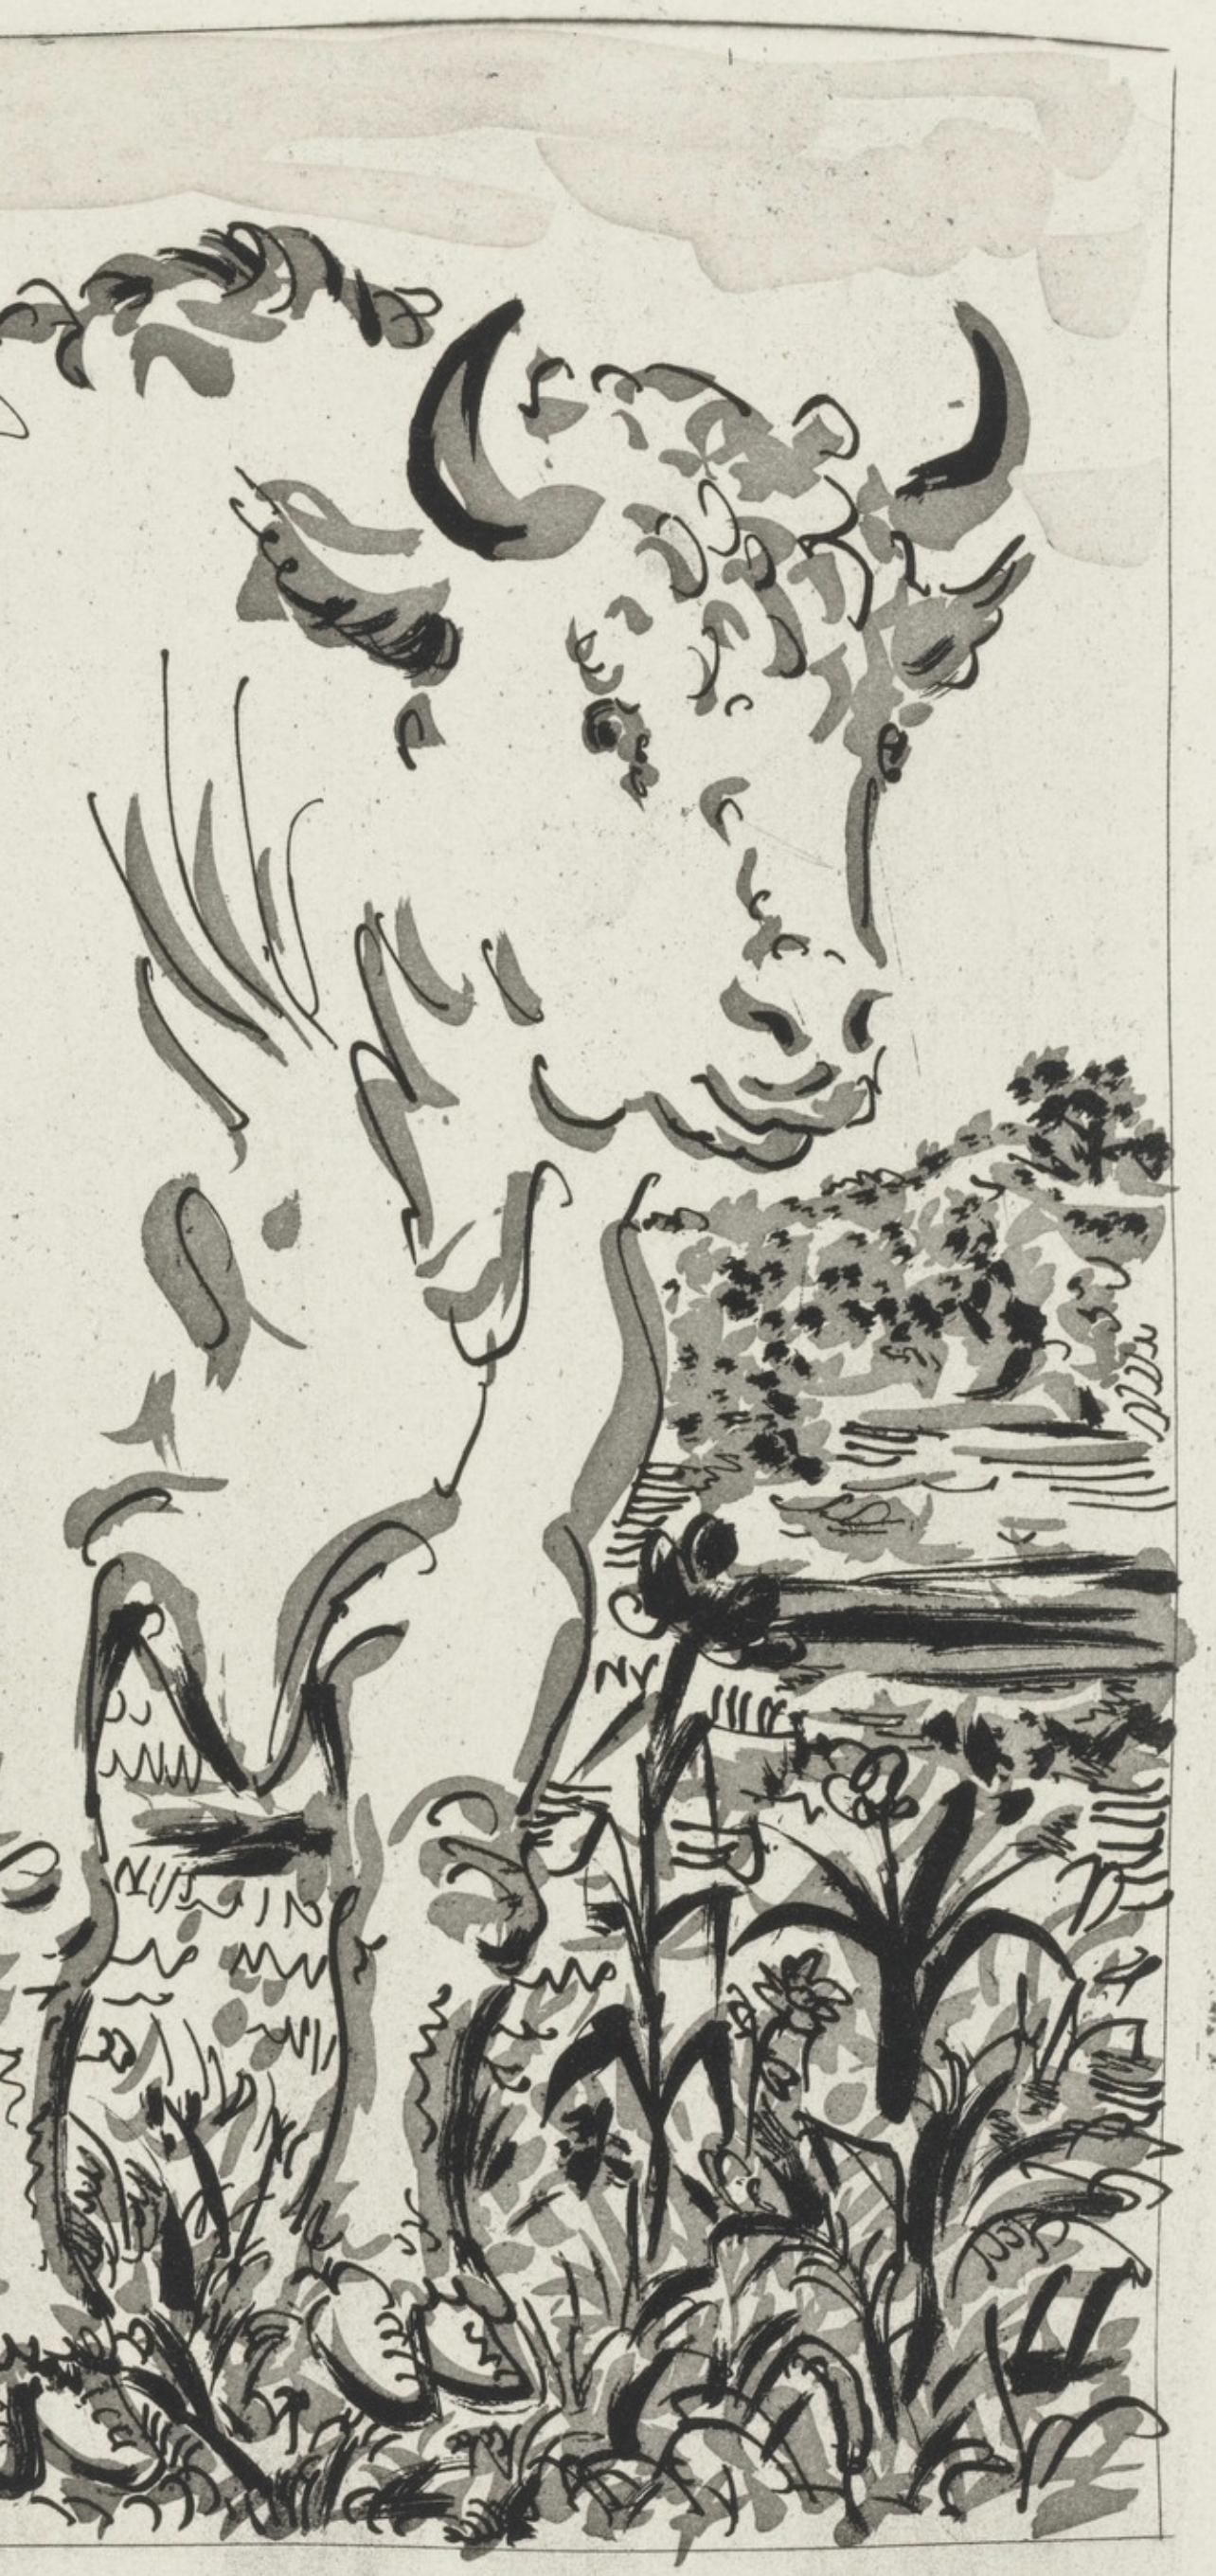 Picasso, Le Bœuf, Histoire naturelle (after) - Print by Pablo Picasso